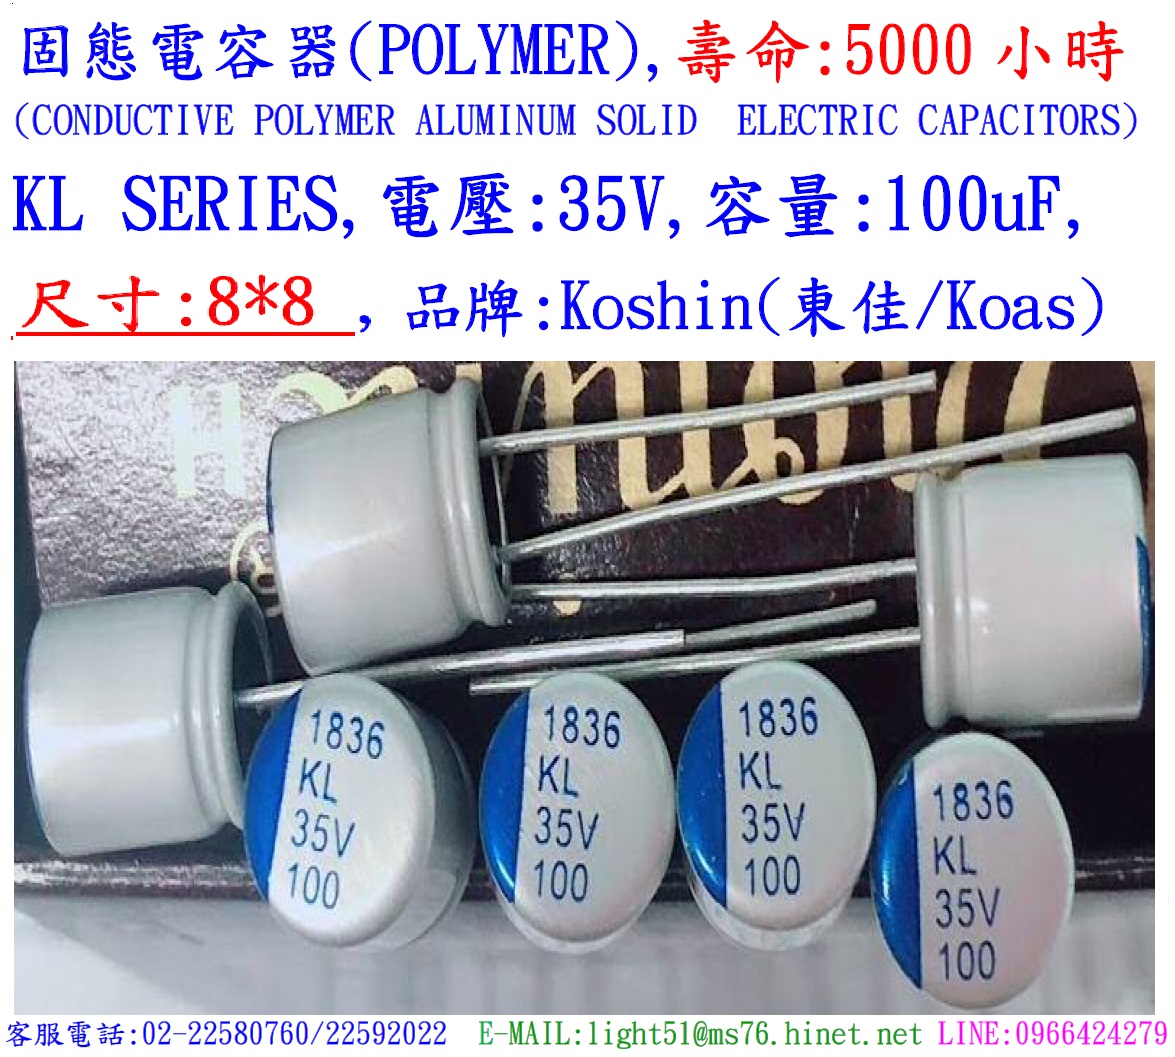 KL,35V,100uF,尺寸:8X8,固態電容器(Hybird),壽命:5000小時,KOSHIN(東佳)